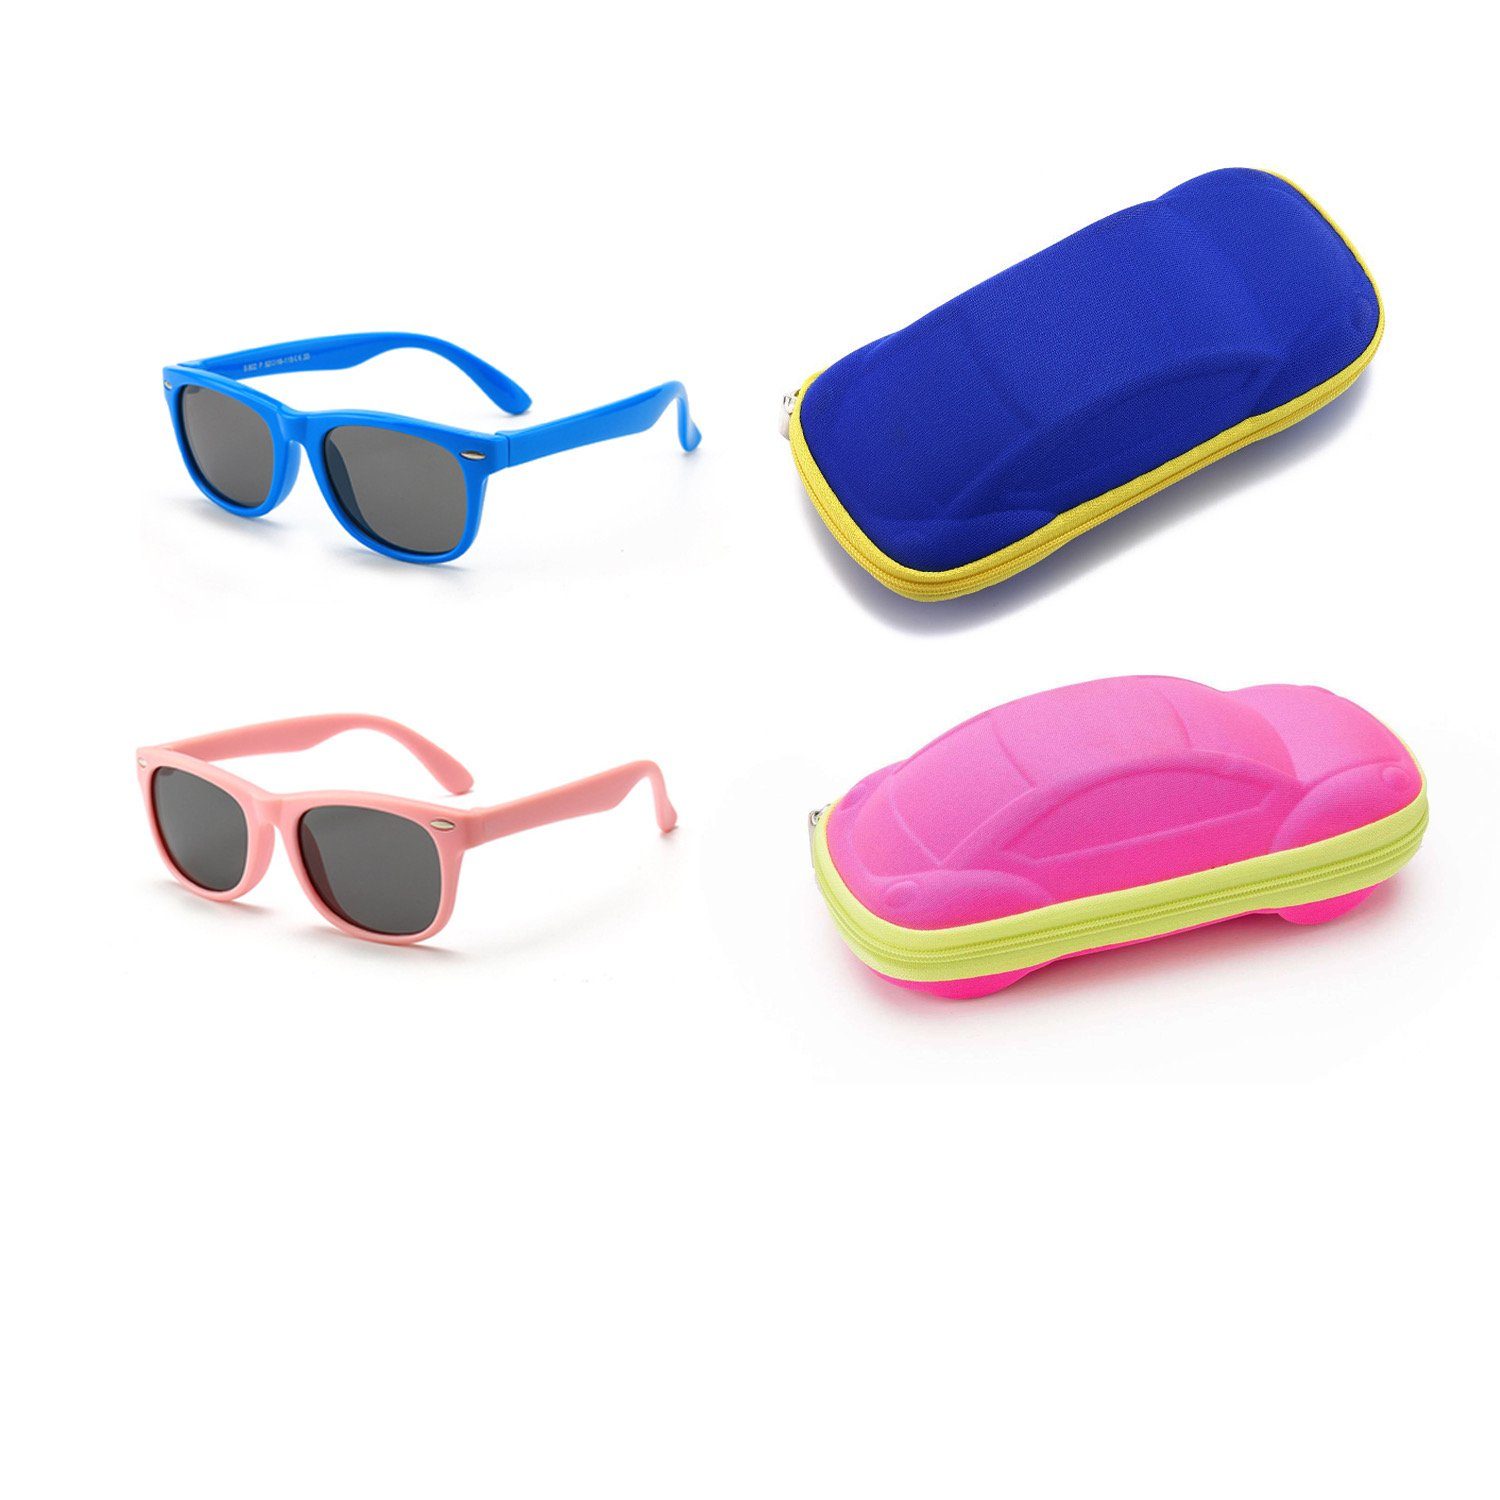 Blau+Rosa Kinder Olotos 100% Schutz mit Brillenetui Brille Mädchen für Sonnenbrille UV400 Gummi Sonnenbrille Jungen